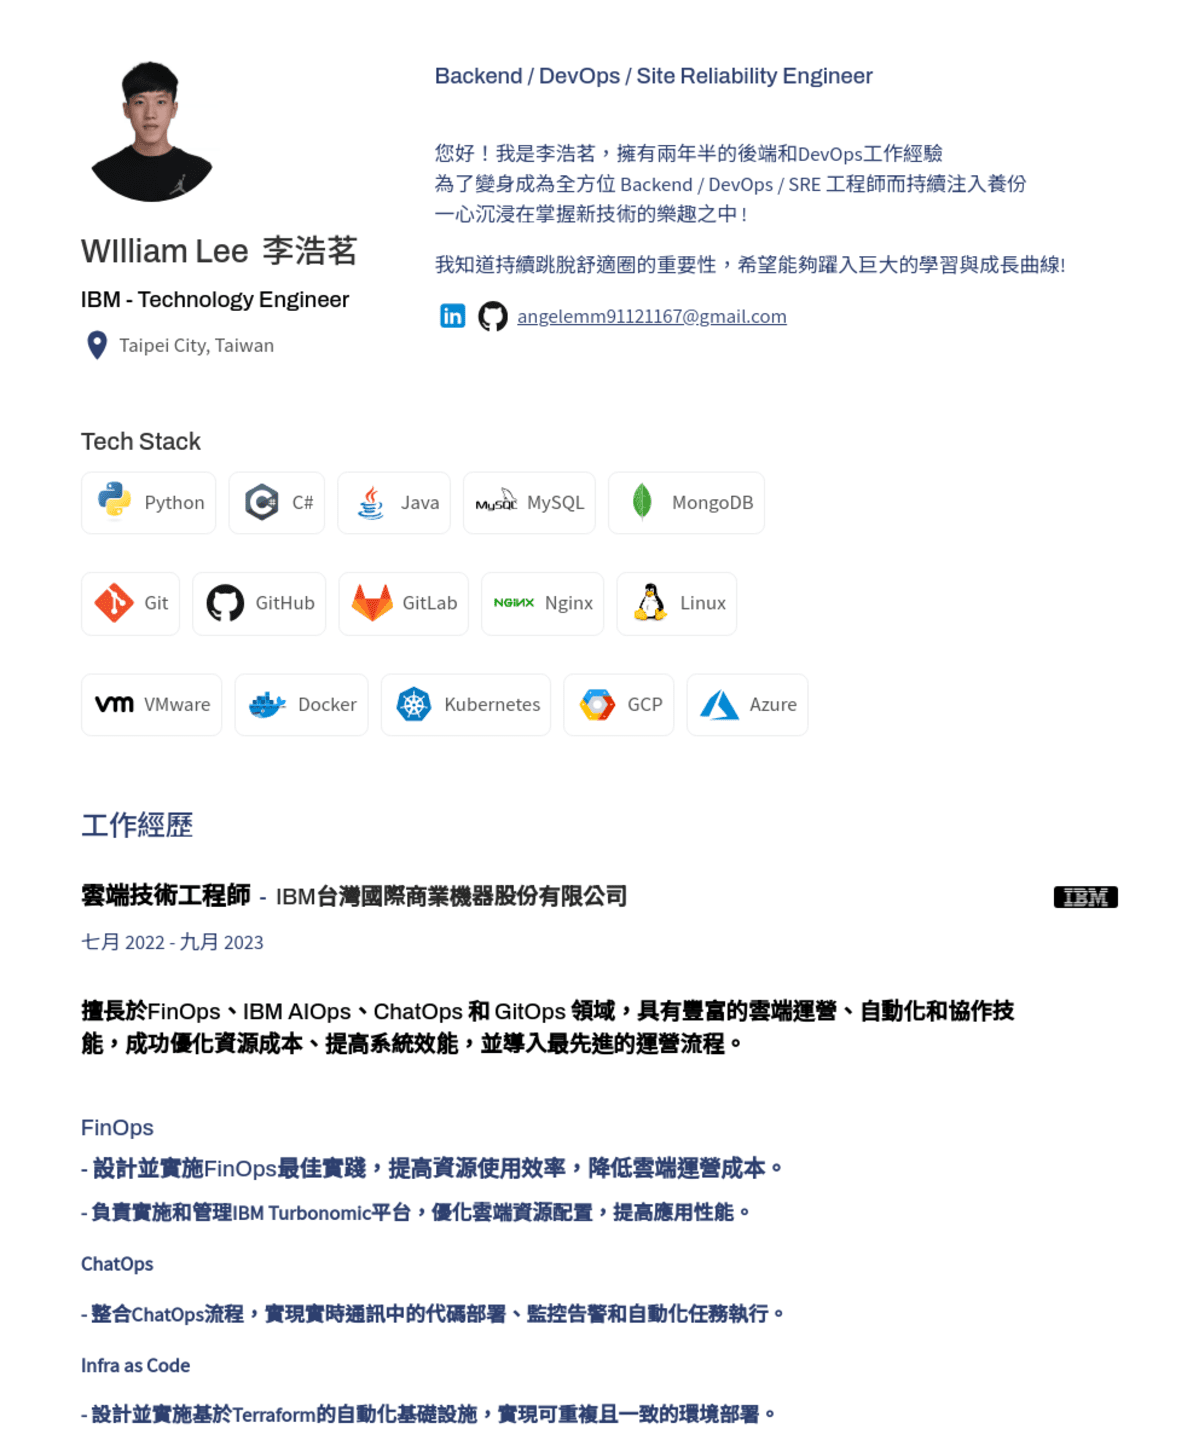 李浩茗 WIlliam Lee, 助理工程師_實習@動力安全資訊股份有限公司